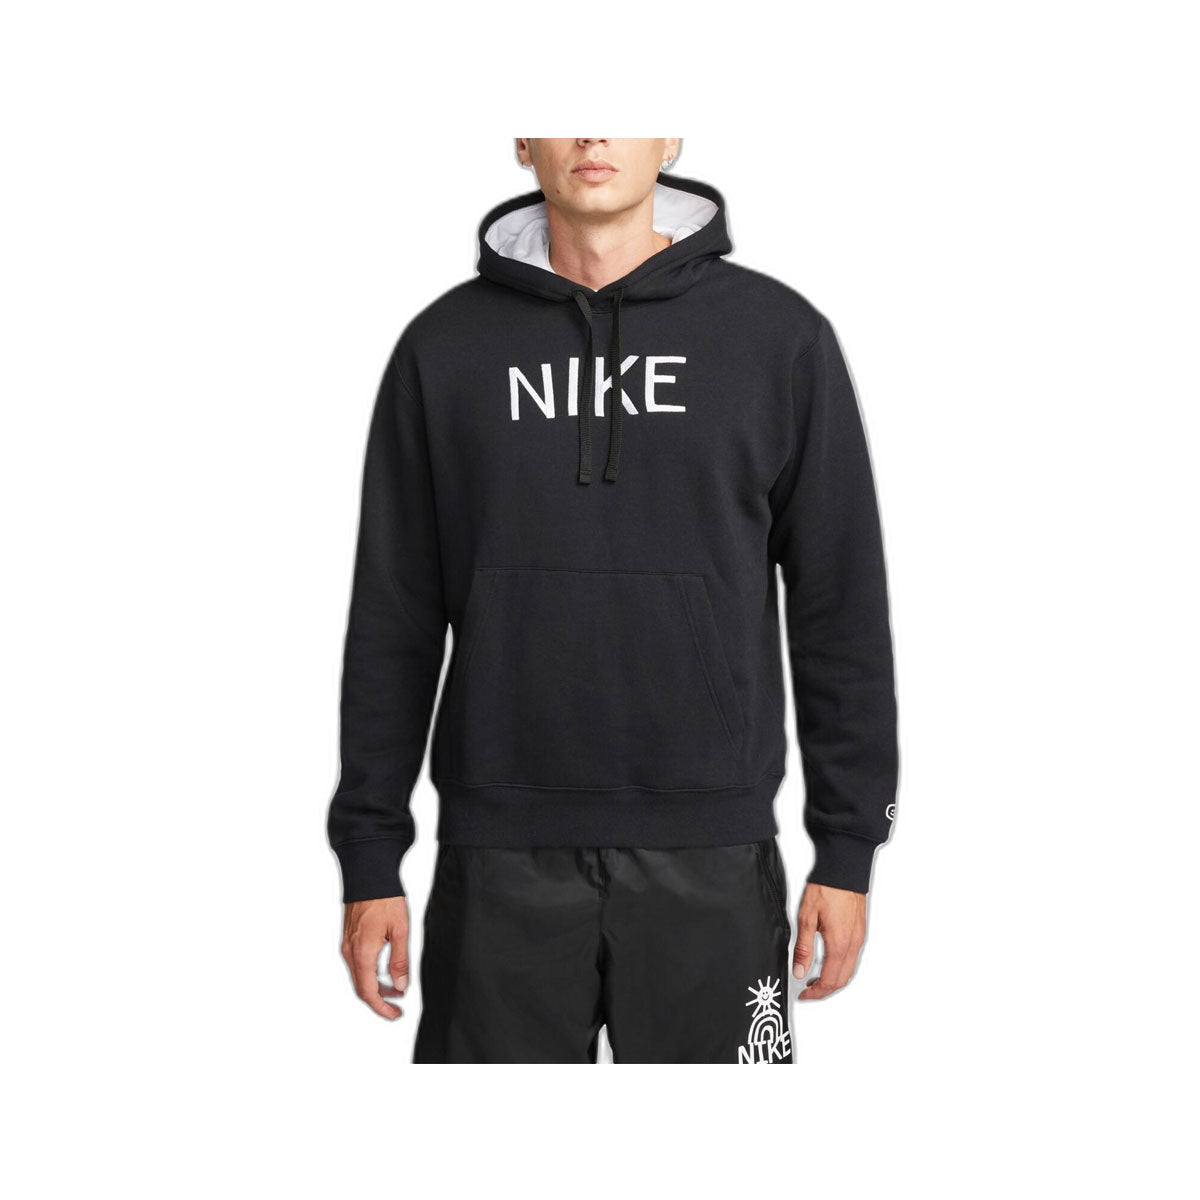 Nike Men's Sportswear Pullover Hoodie